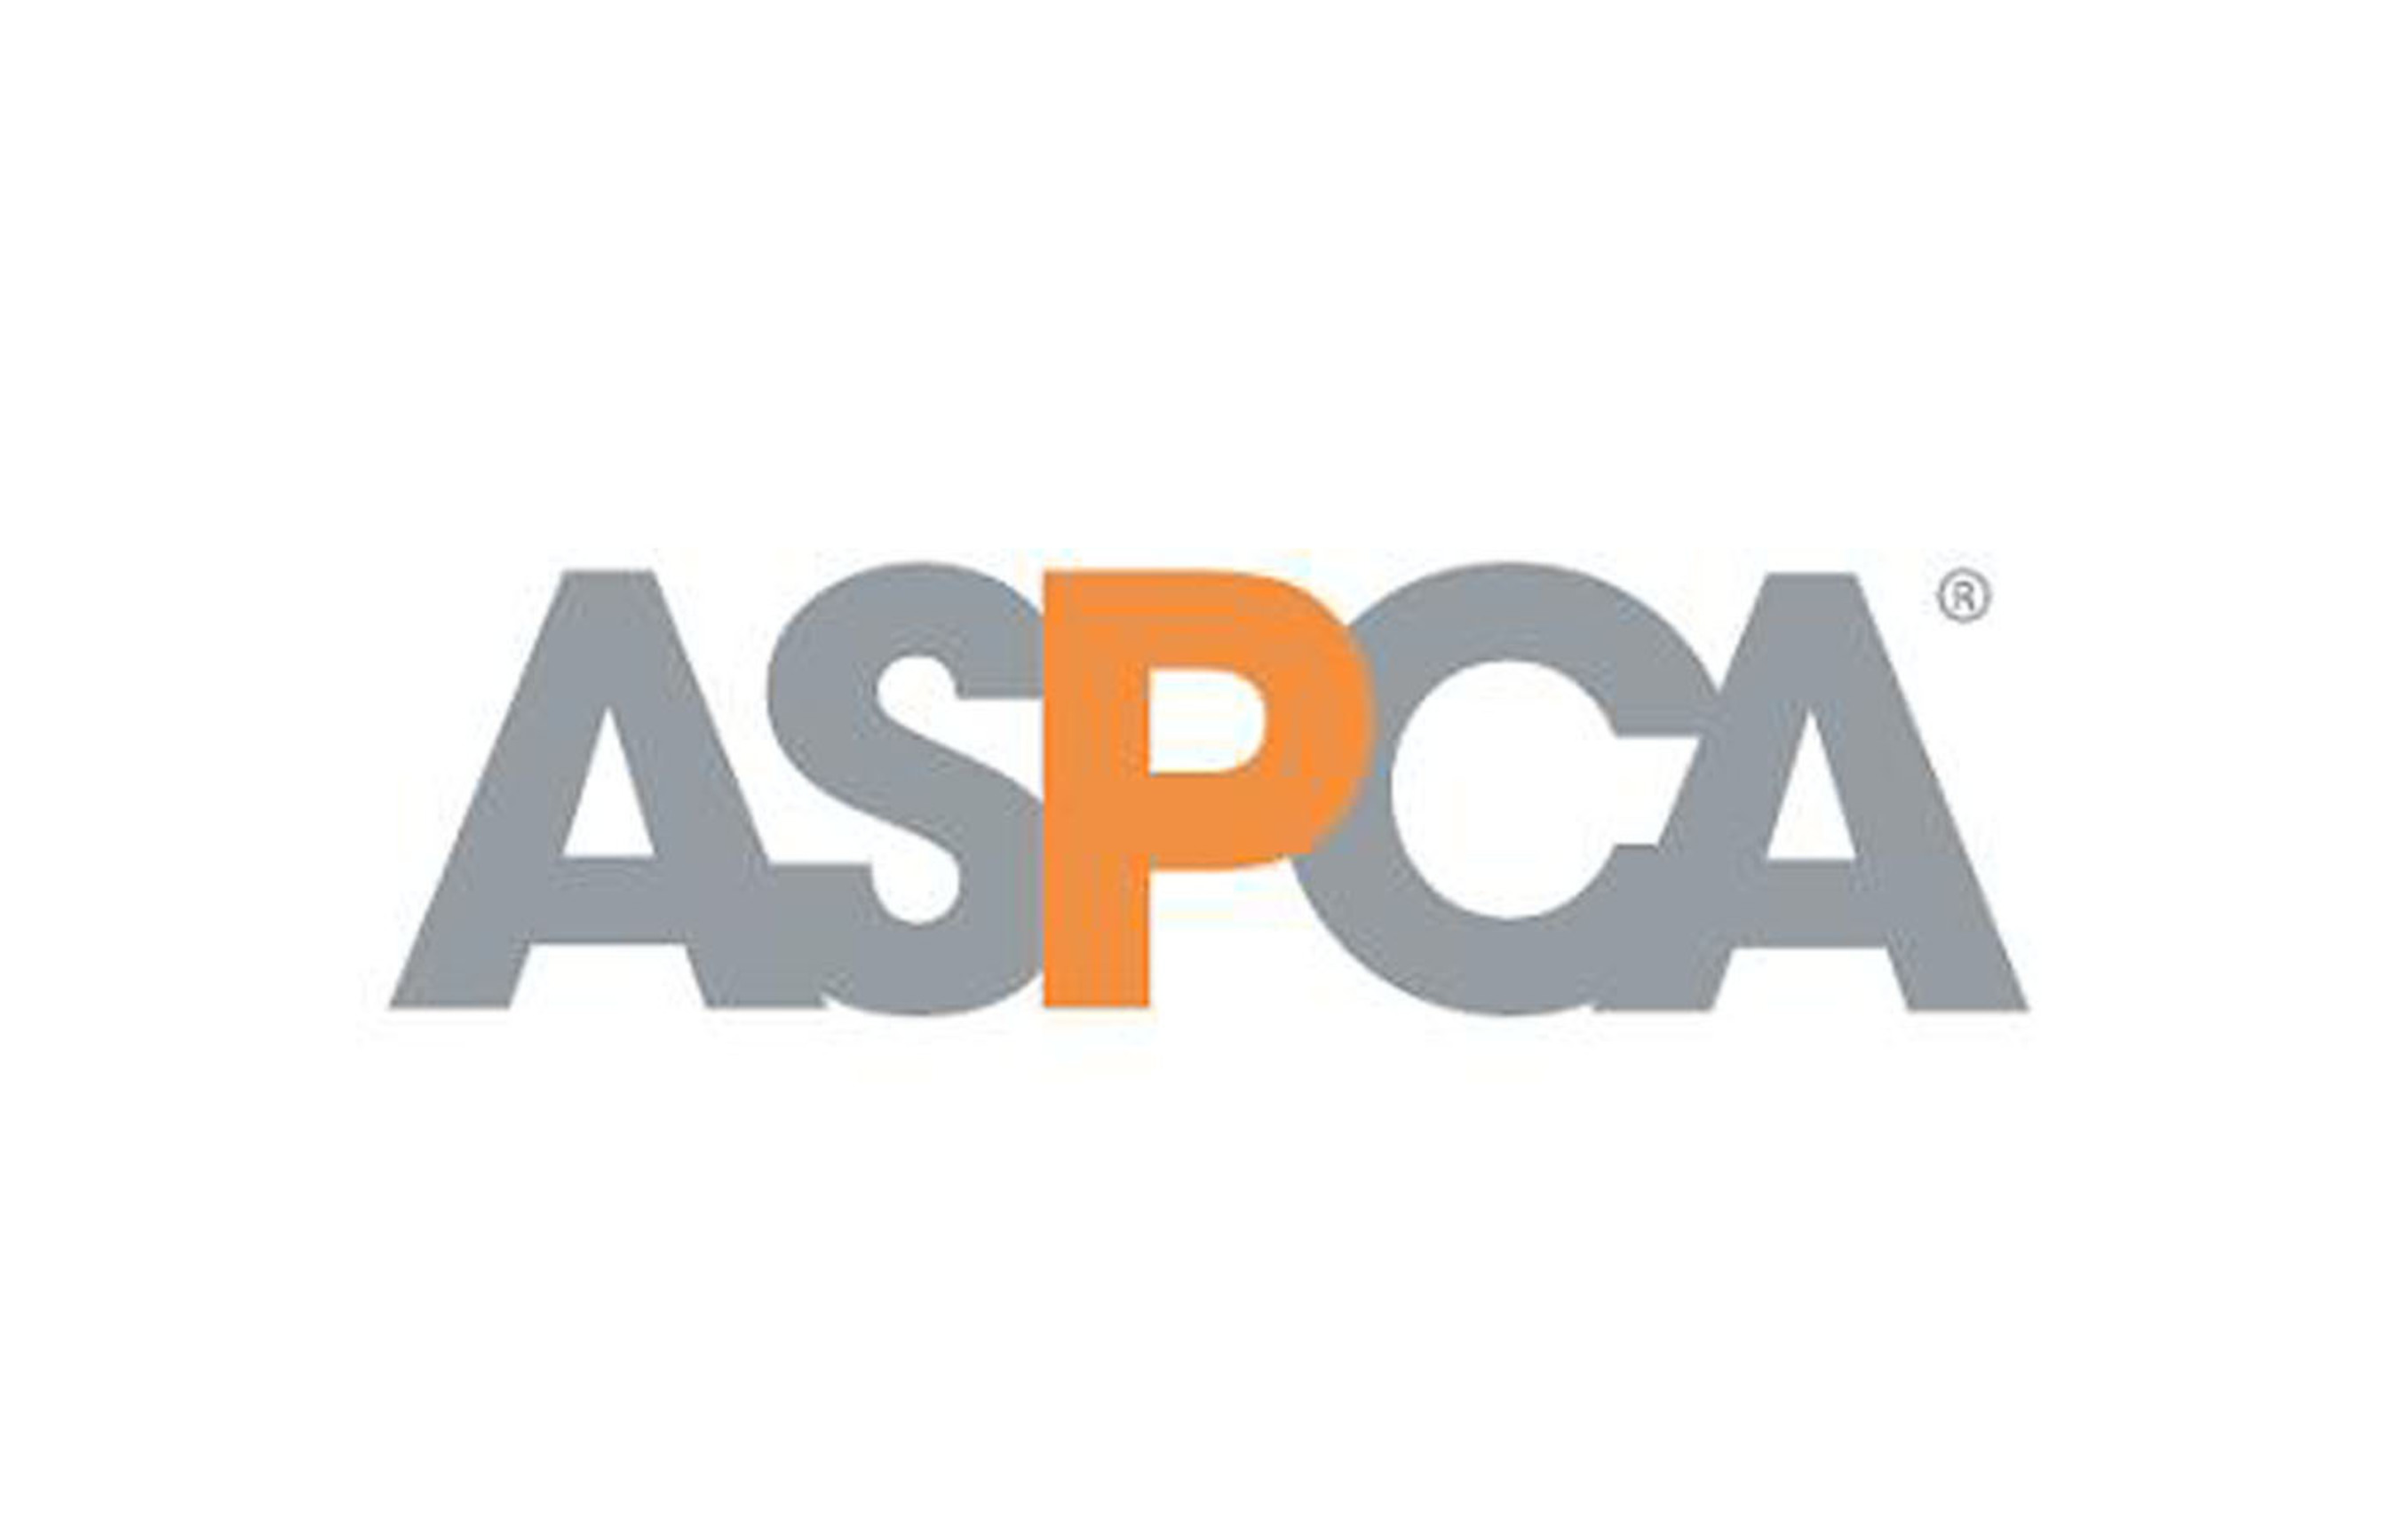 ASPCA logo. (PRNewsFoto/ASPCA) (PRNewsFoto/ASPCA)